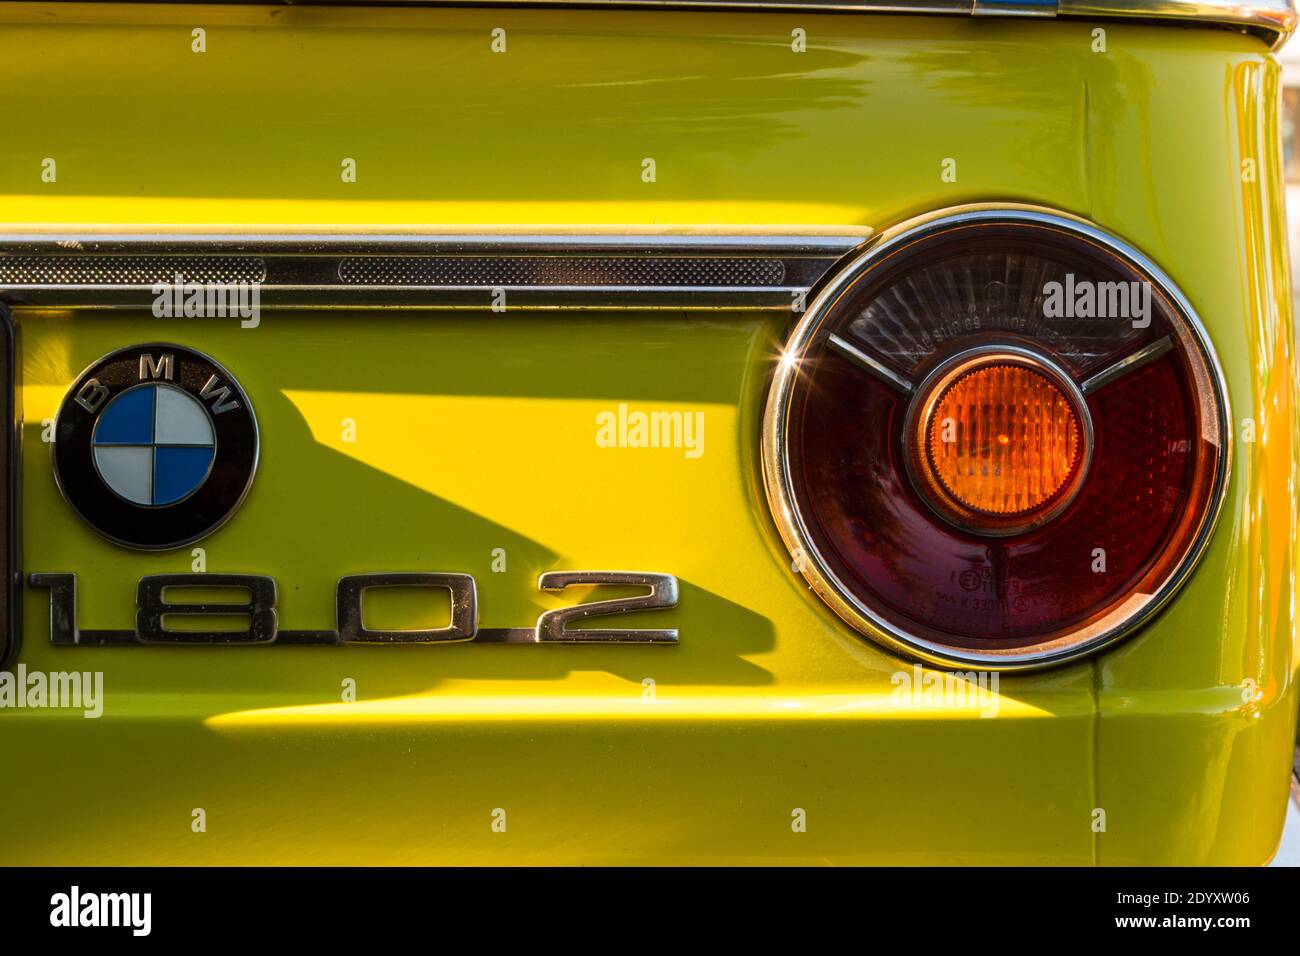 Auto BMW 1802 a 2 porte, prodotta nel 1971-1974, esposta al salone automobilistico di Sopron, Ungheria Foto Stock